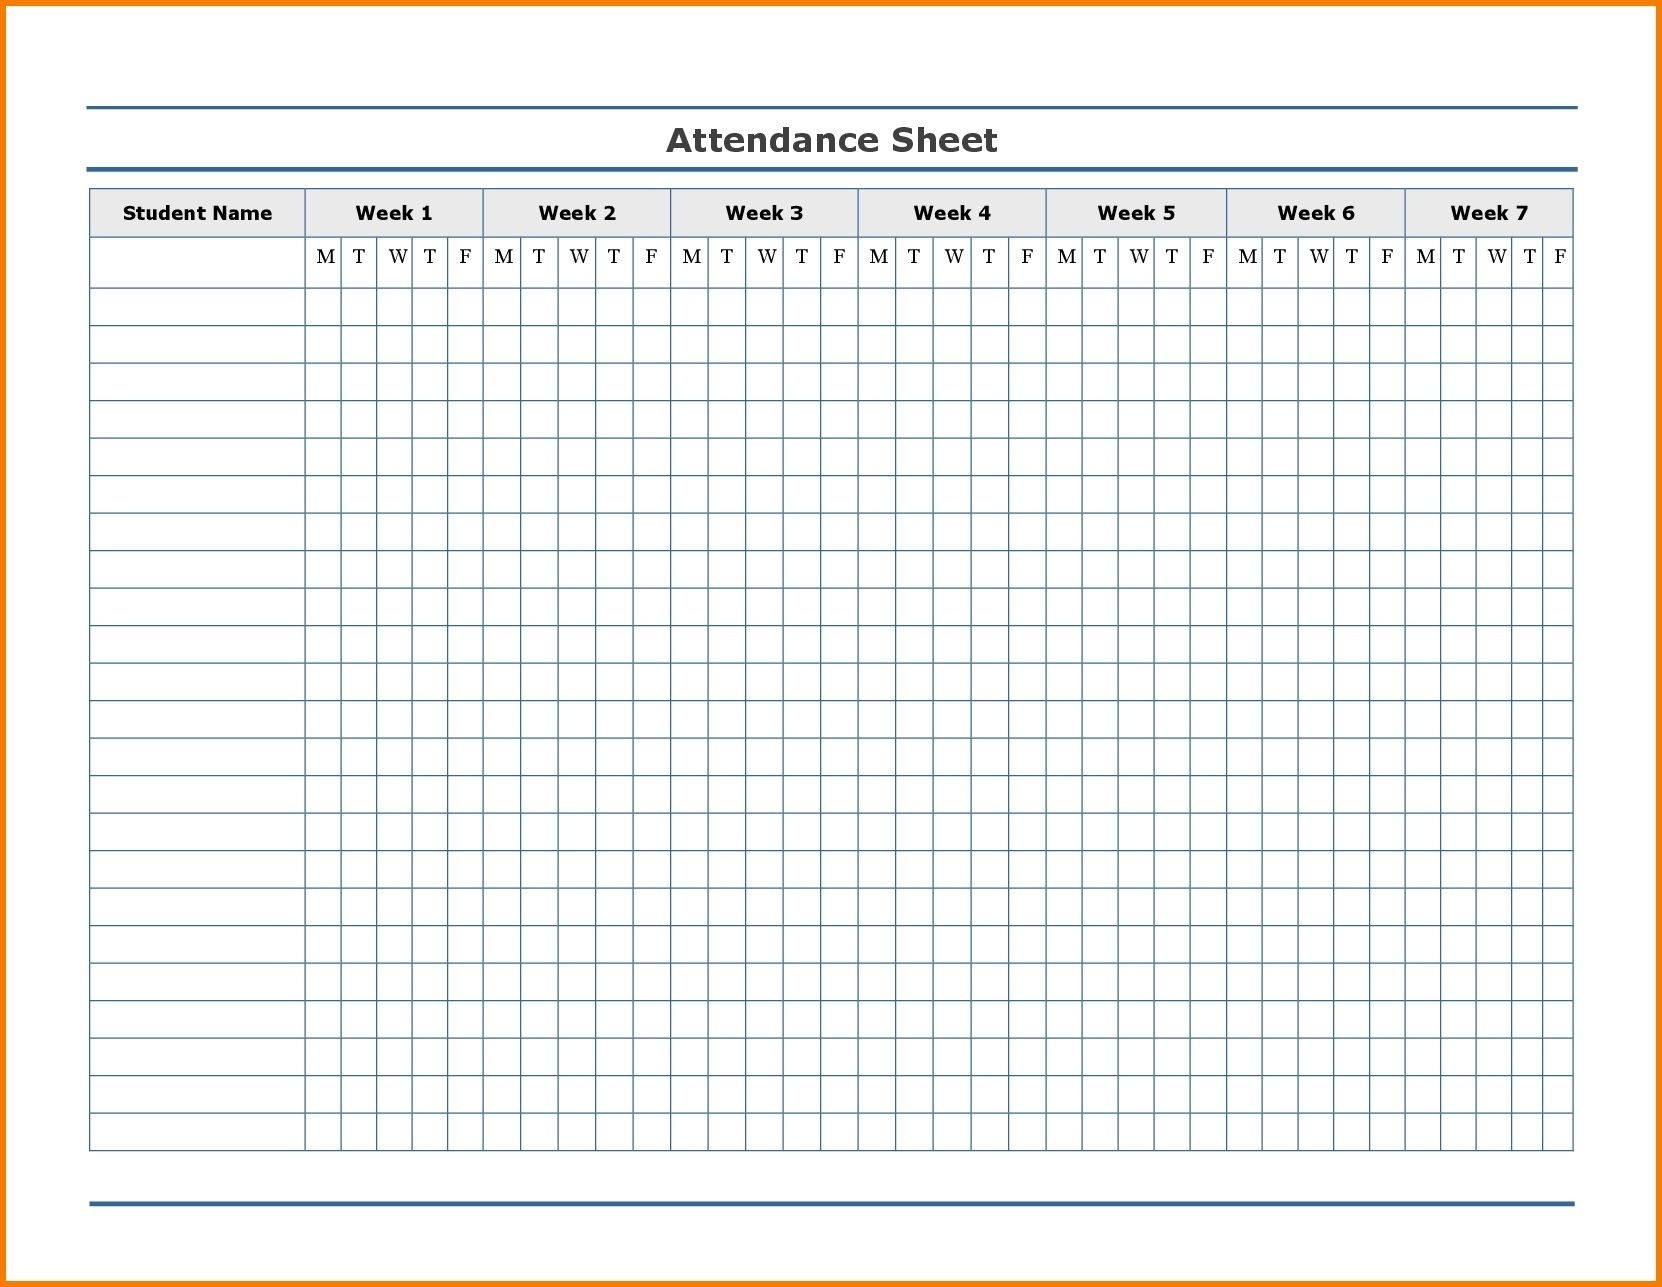 Free Employee Attendance Calendar | Employee Tracker-2020 Employee Attendance Template